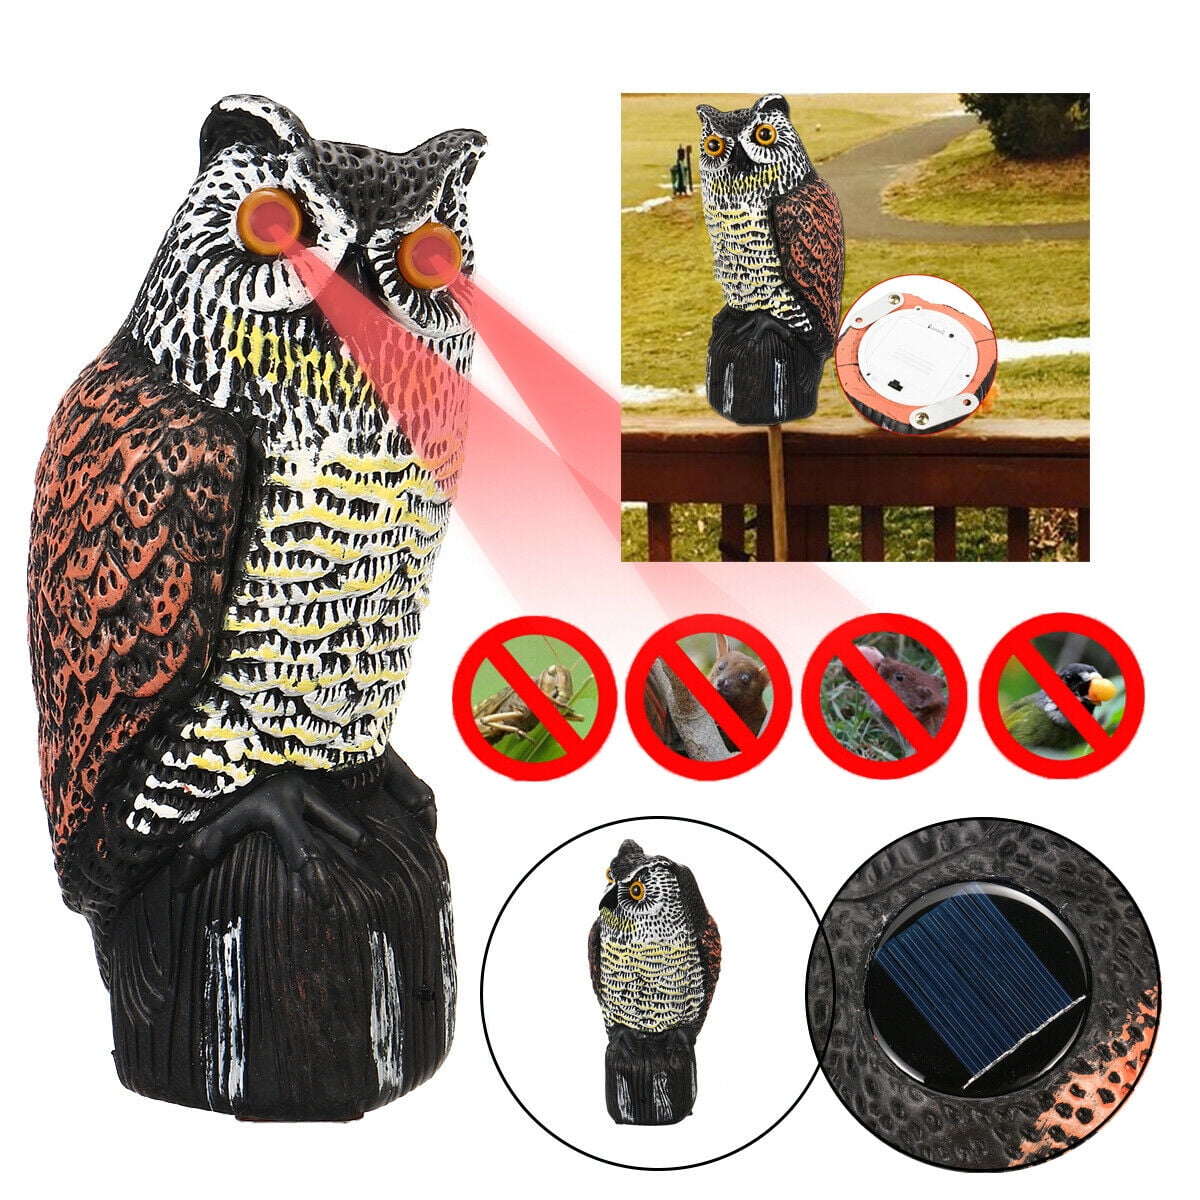 Owl Decoy Realistic Garden Yard Pest Repellent Bird Scarecrow Outdoor Decor US 